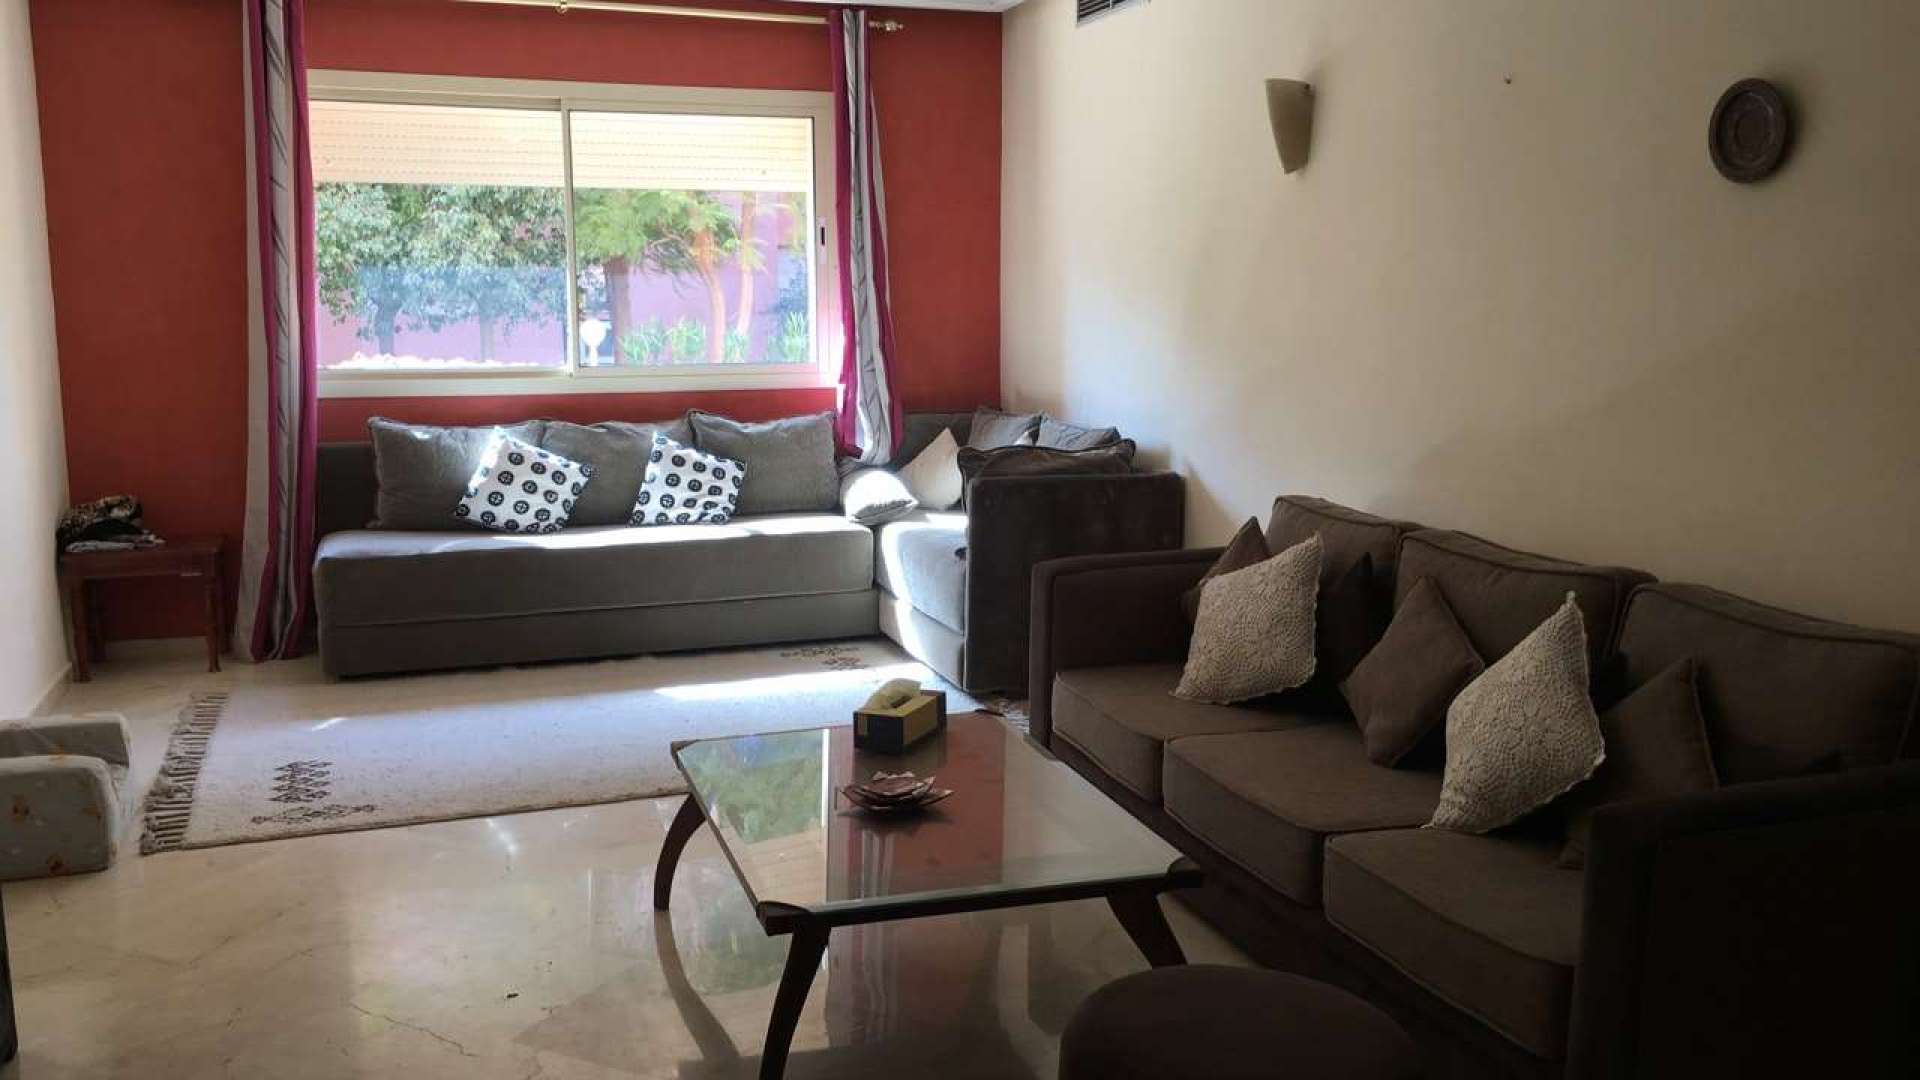 Vente,Appartement,Appartement meublé 2ch salon Résidence sécurisé avec piscine,Marrakech,Route Casablanca